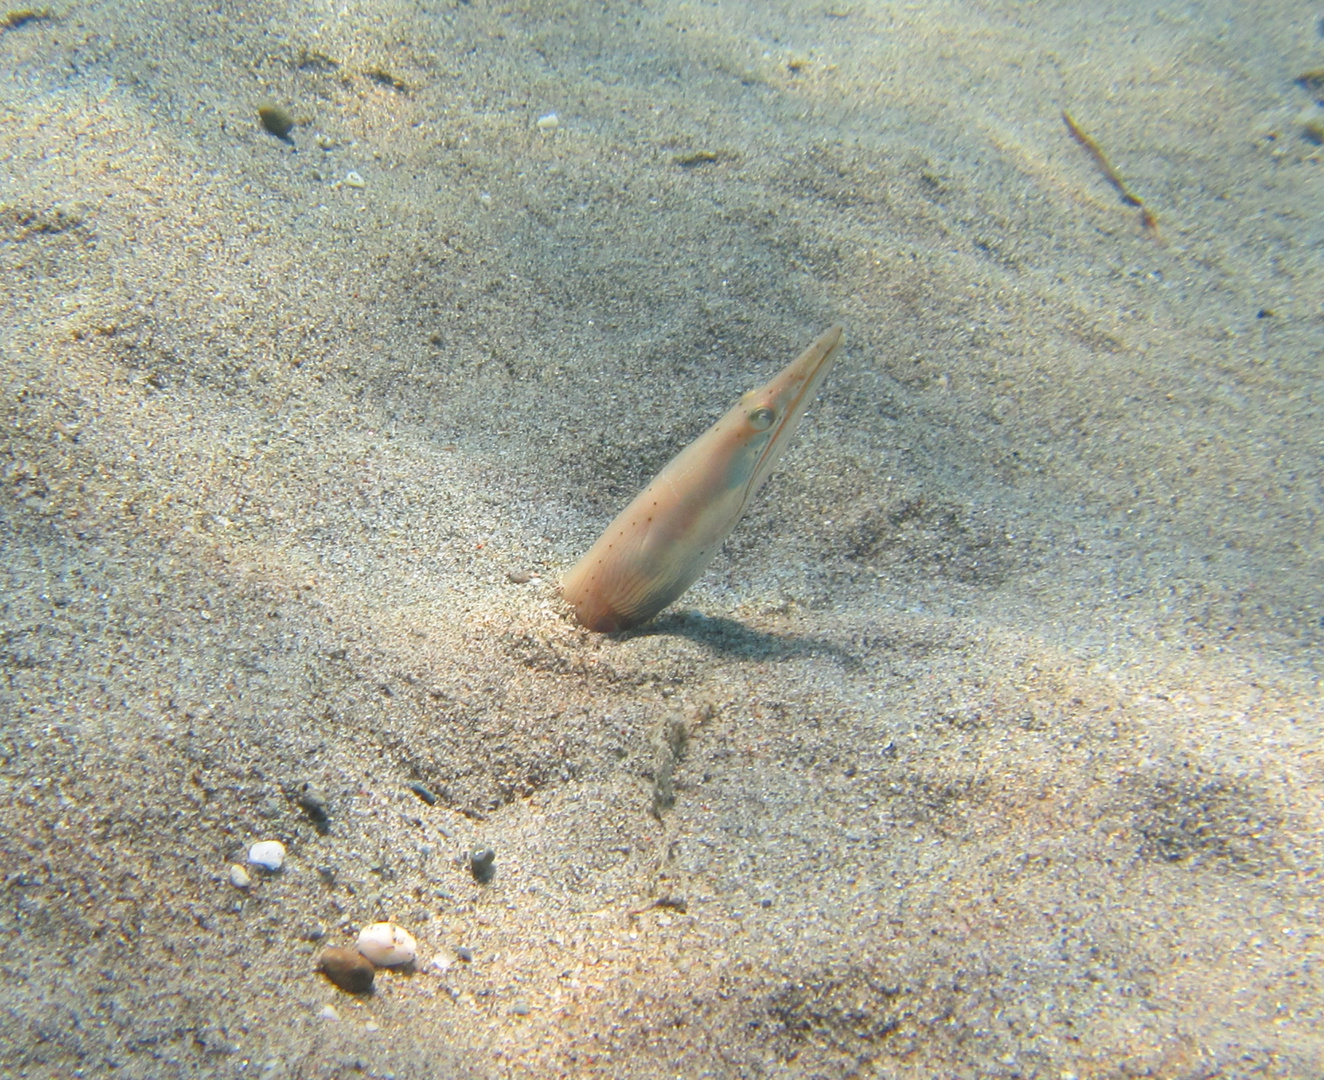 pesce serpente (Ophisurus serpens) vicino alla riva, a soli 3 metri di profondità